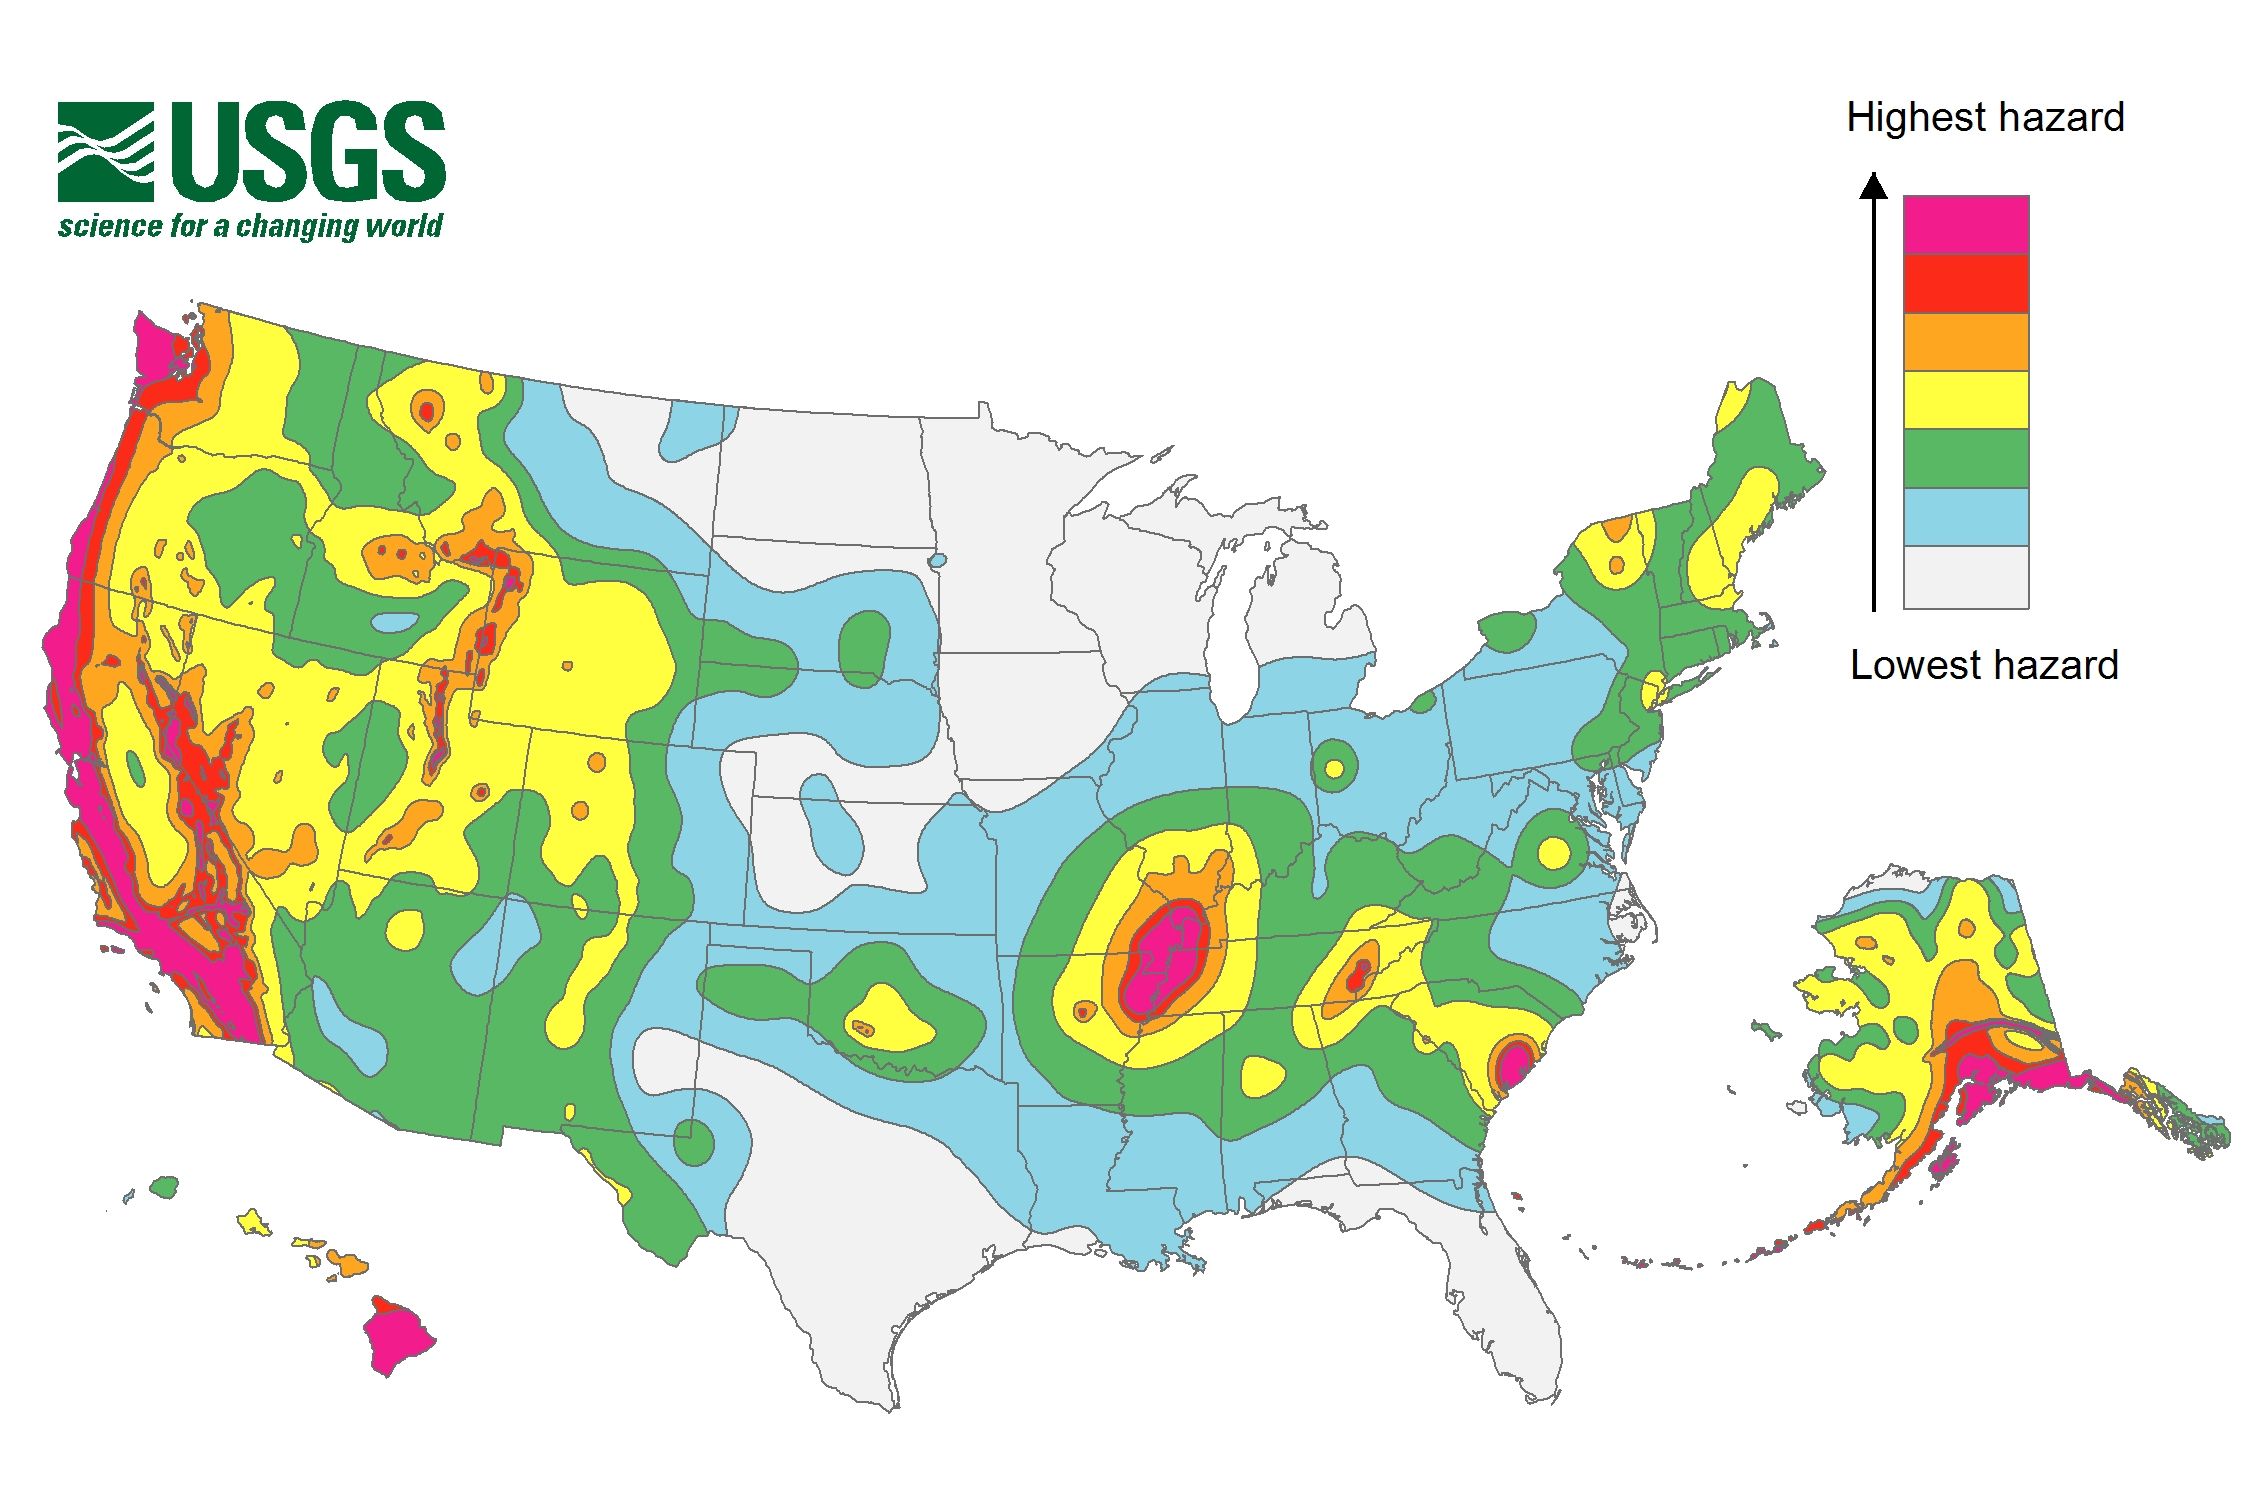 美国加州南部发生6.4级地震 为该地区20年来最强地震